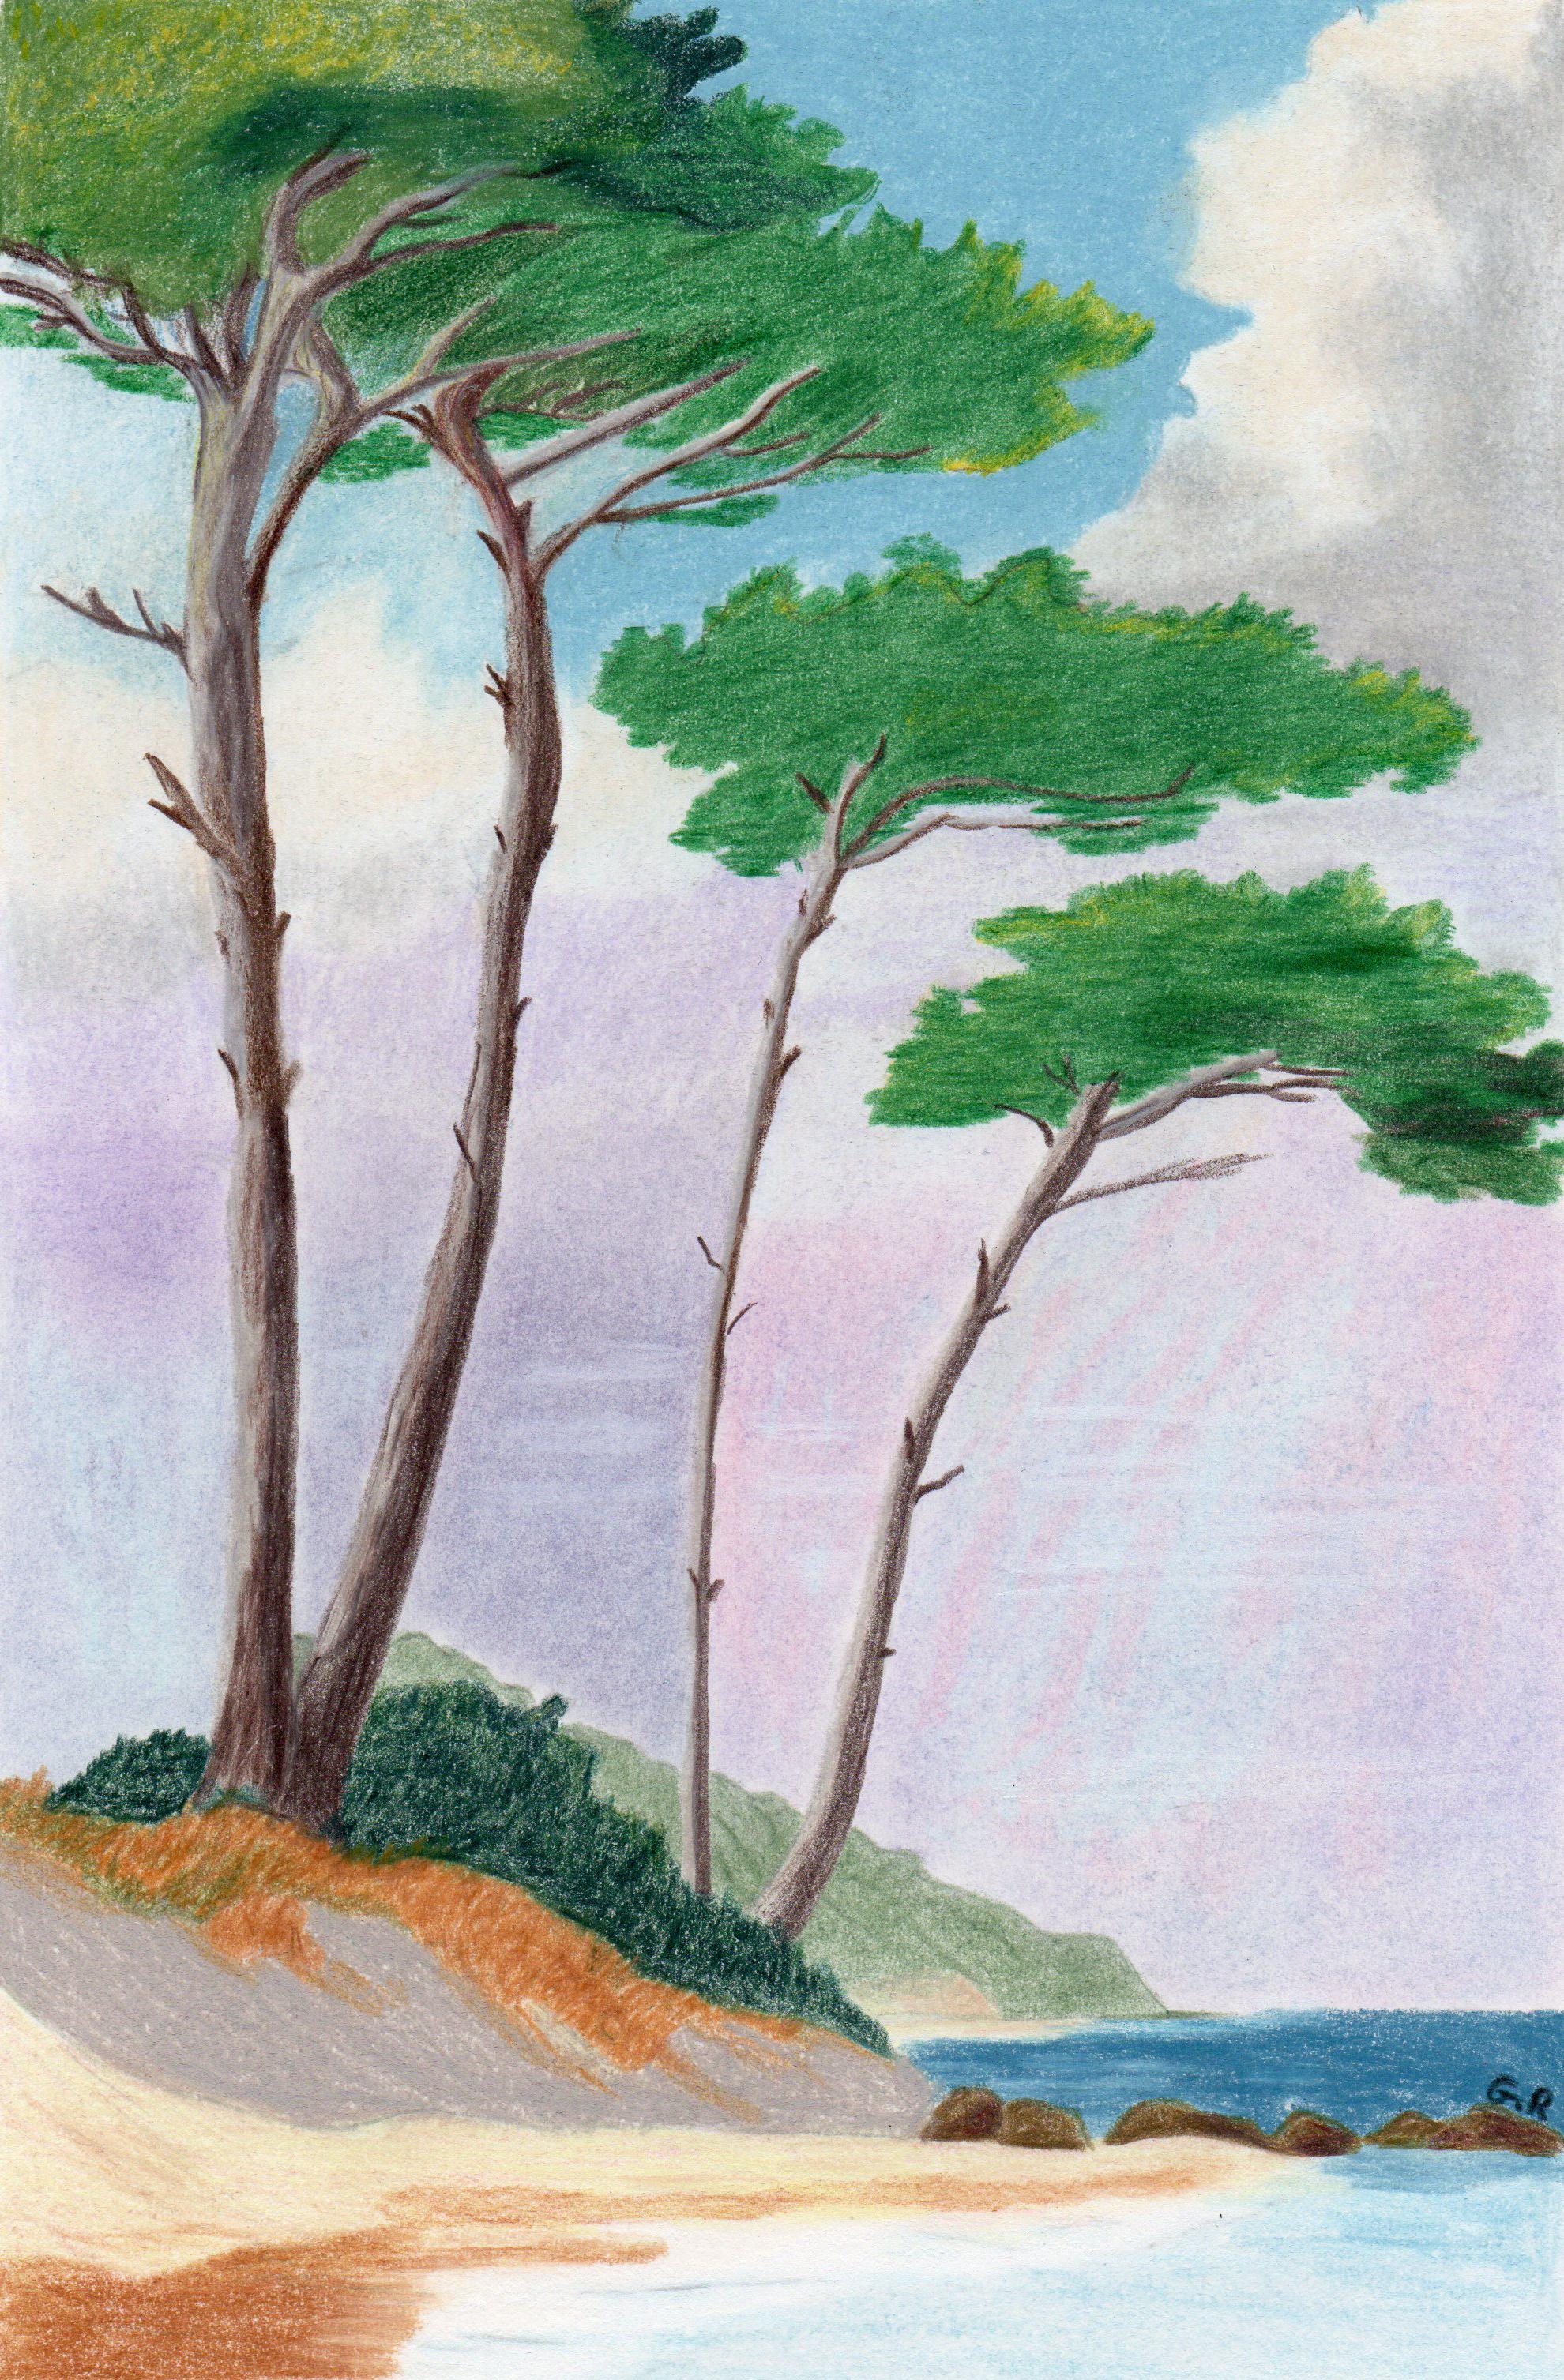 Gabriel Riesnert Landscape Art - Au bord de l'eau, Original Drawing, Pastel, Seascape, Trees along the seafront